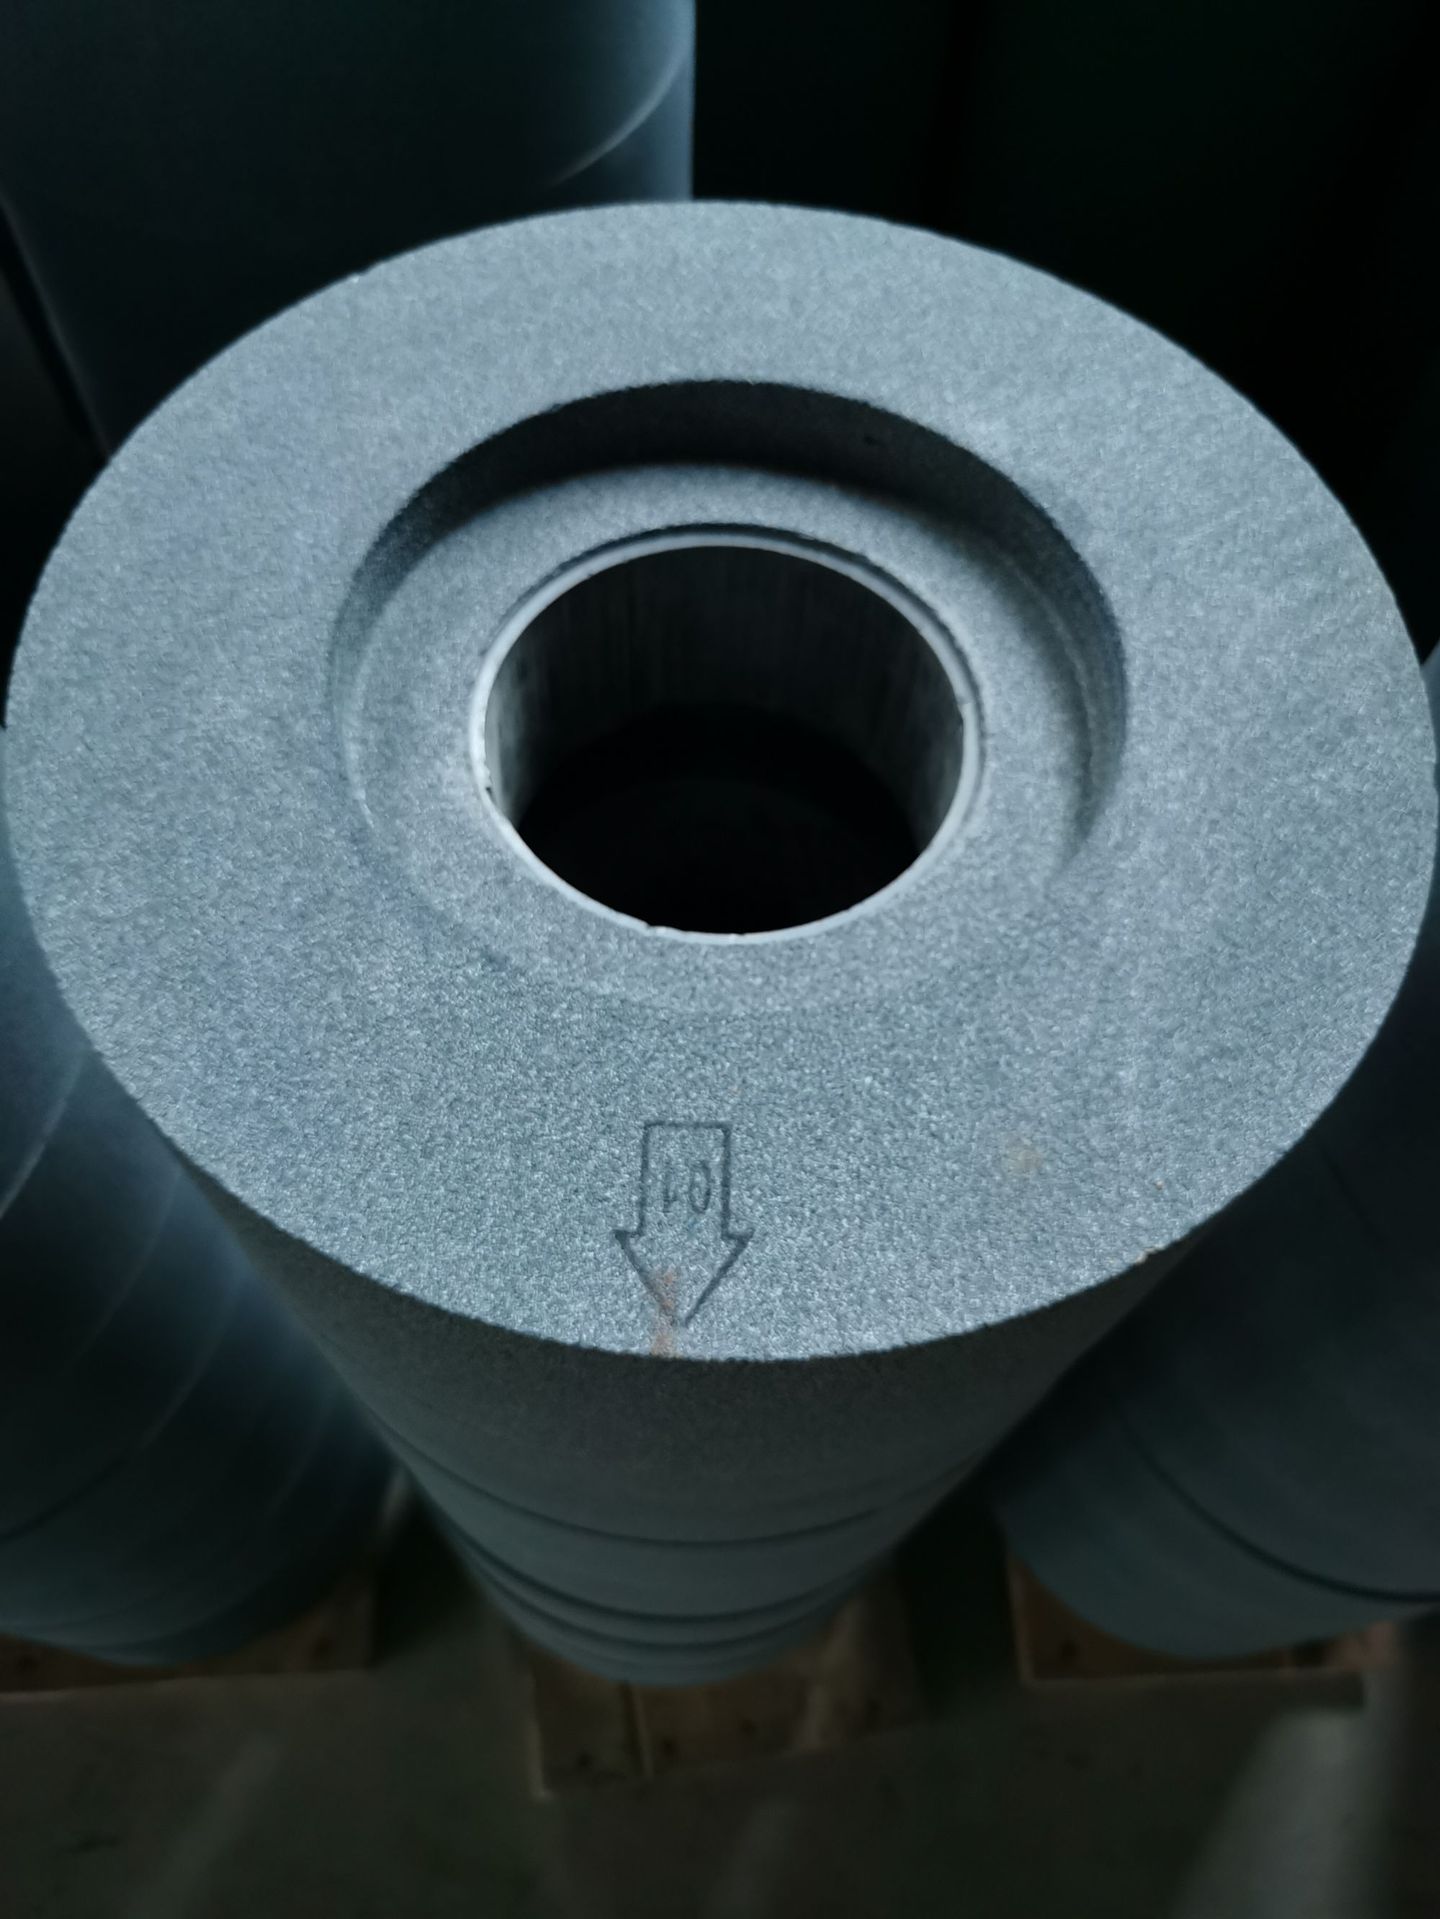 silicon carbide grinding wheel